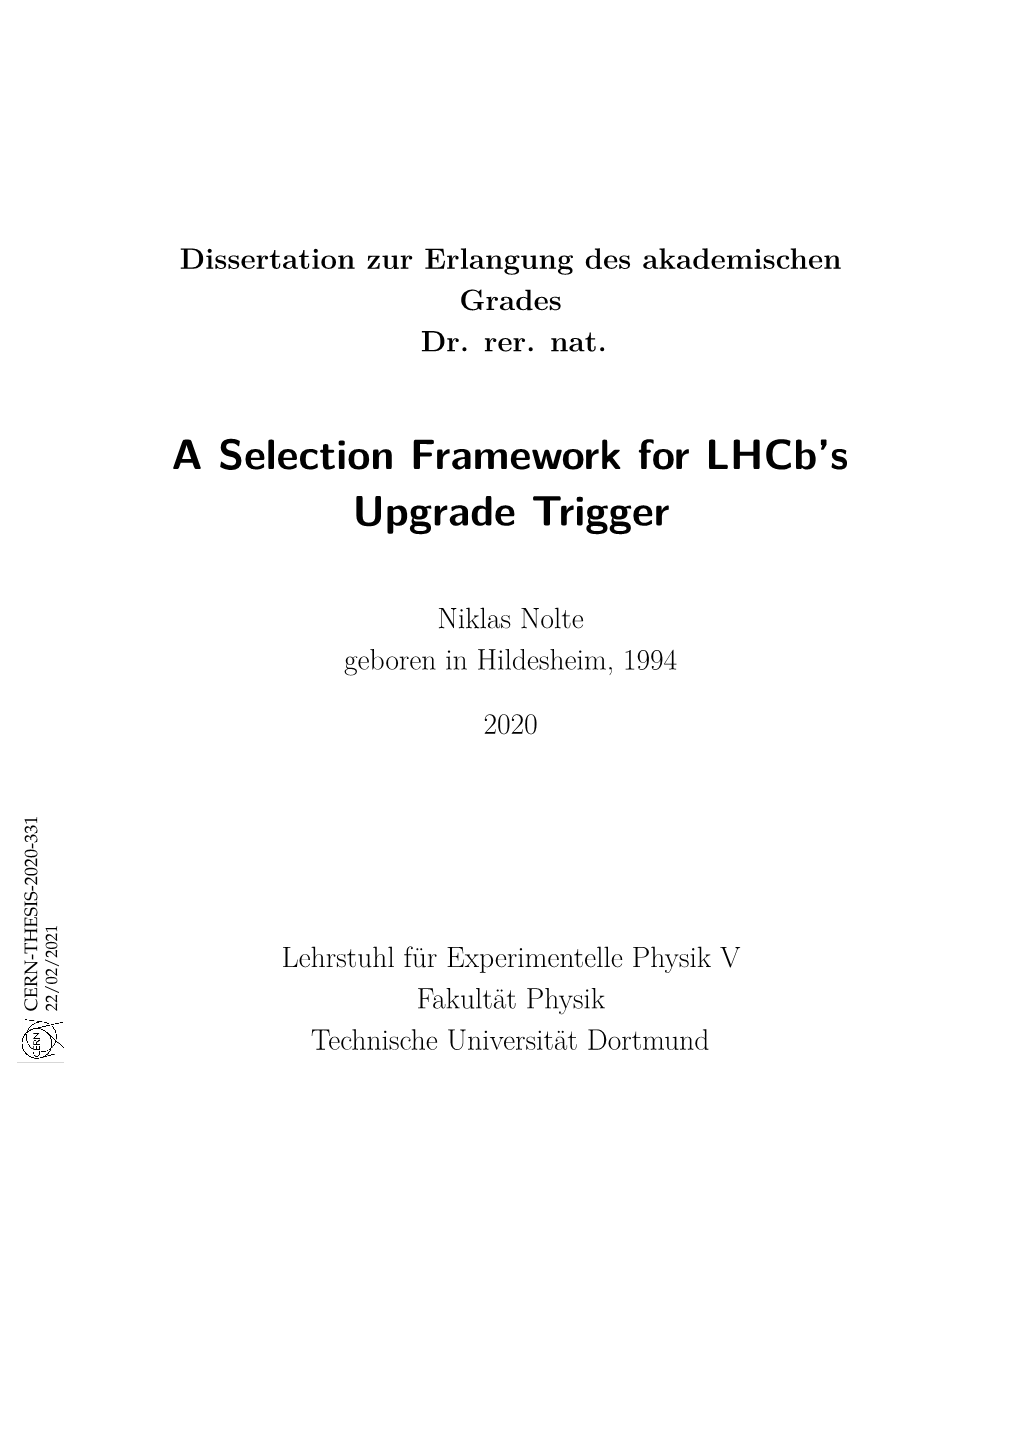 A Selection Framework for Lhcb's Upgrade Trigger